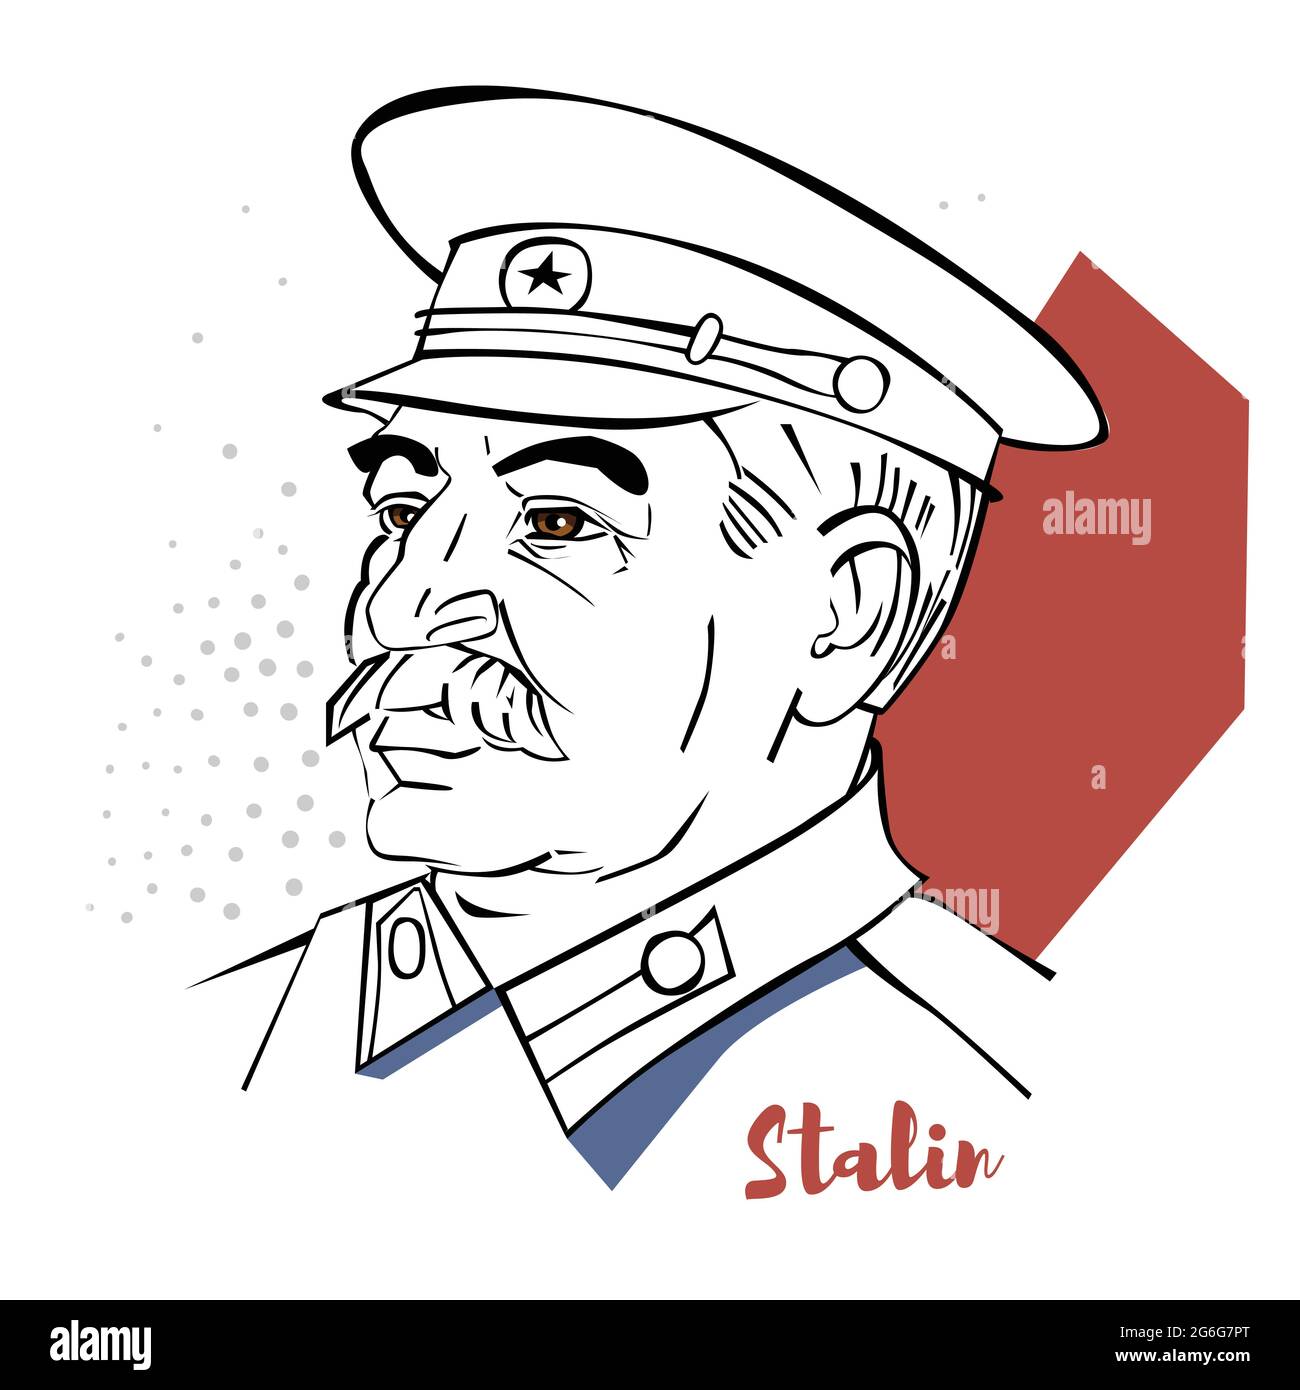 Joseph Stalin verticale vettoriale a colori piatti con contorni neri. Rivoluzionario georgiano e politico sovietico che ha guidato l'Unione Sovietica come Secr generale Illustrazione Vettoriale